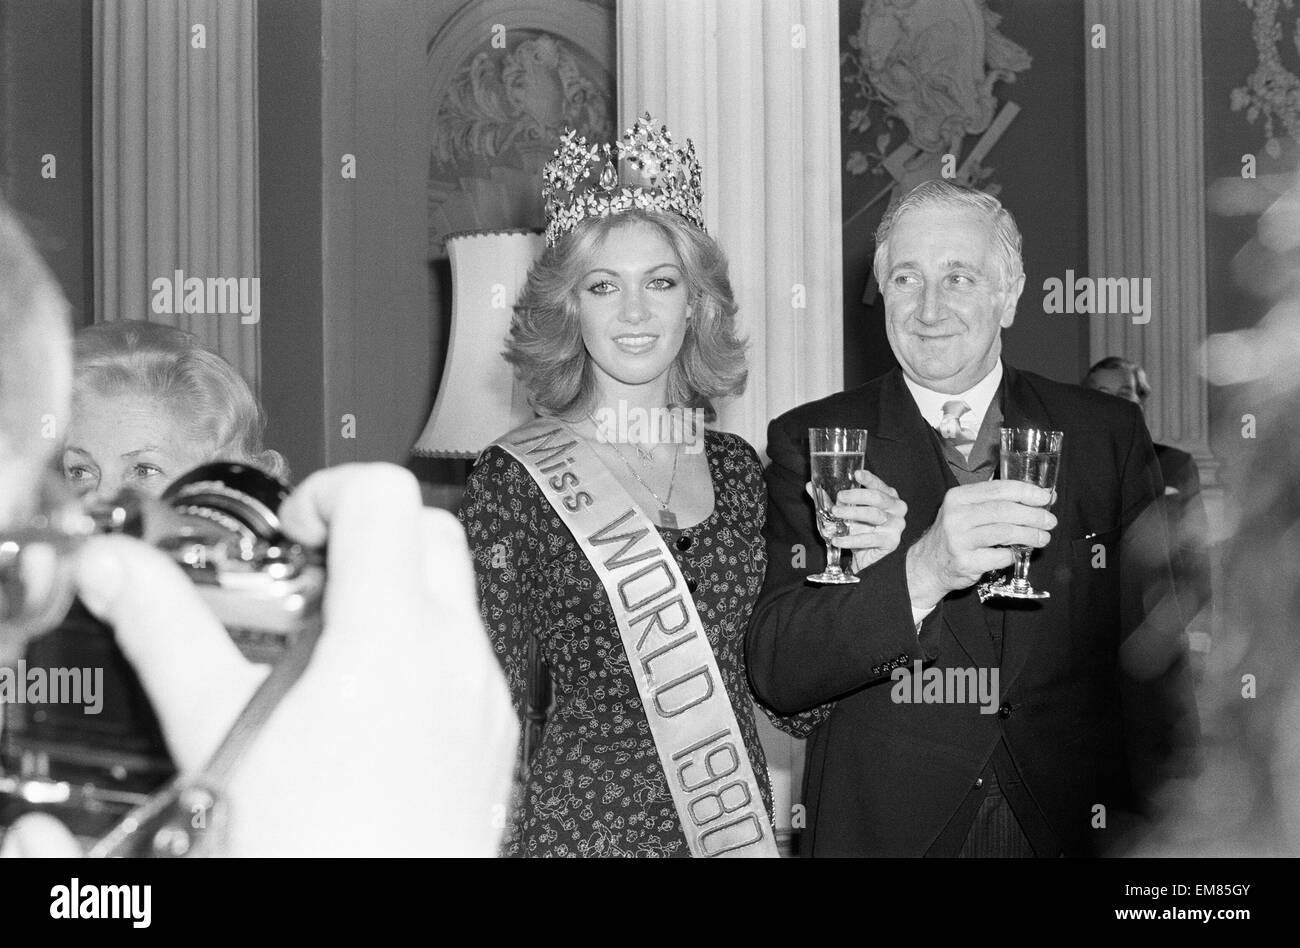 Miss Welt 1980, Miss Deutschland Gabriella Brum Frühstück Photocall mit Lord Mayor of London 14. November 1980. Stockfoto